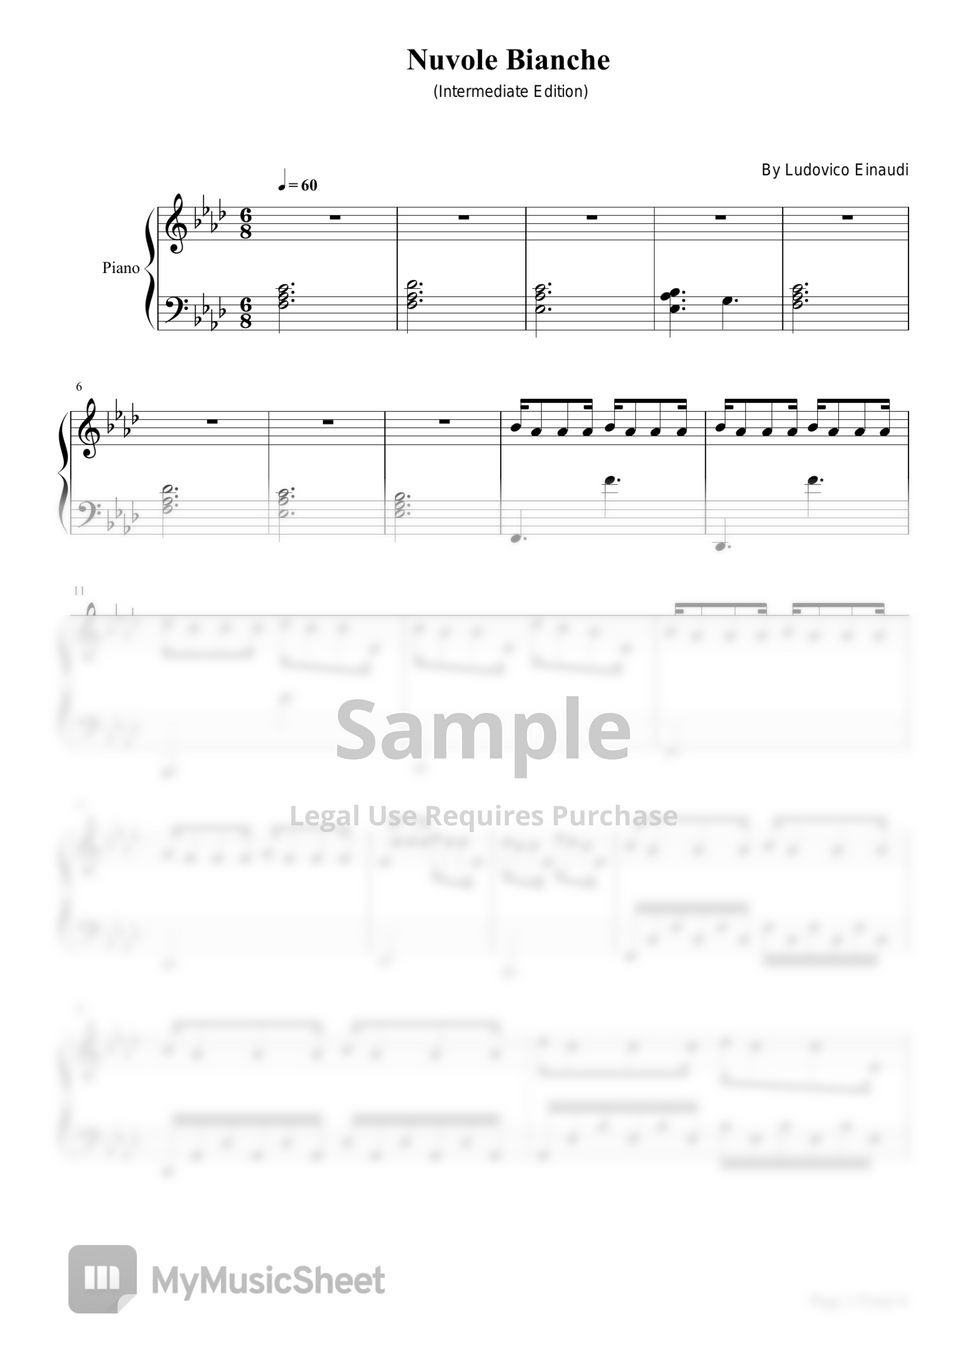 Ludovico Einaudi - Nuvole Bianche (Nuvole Bianche,Ludovico Einaudi,Piano Solo Sheet Intermediate Edition) by Poon